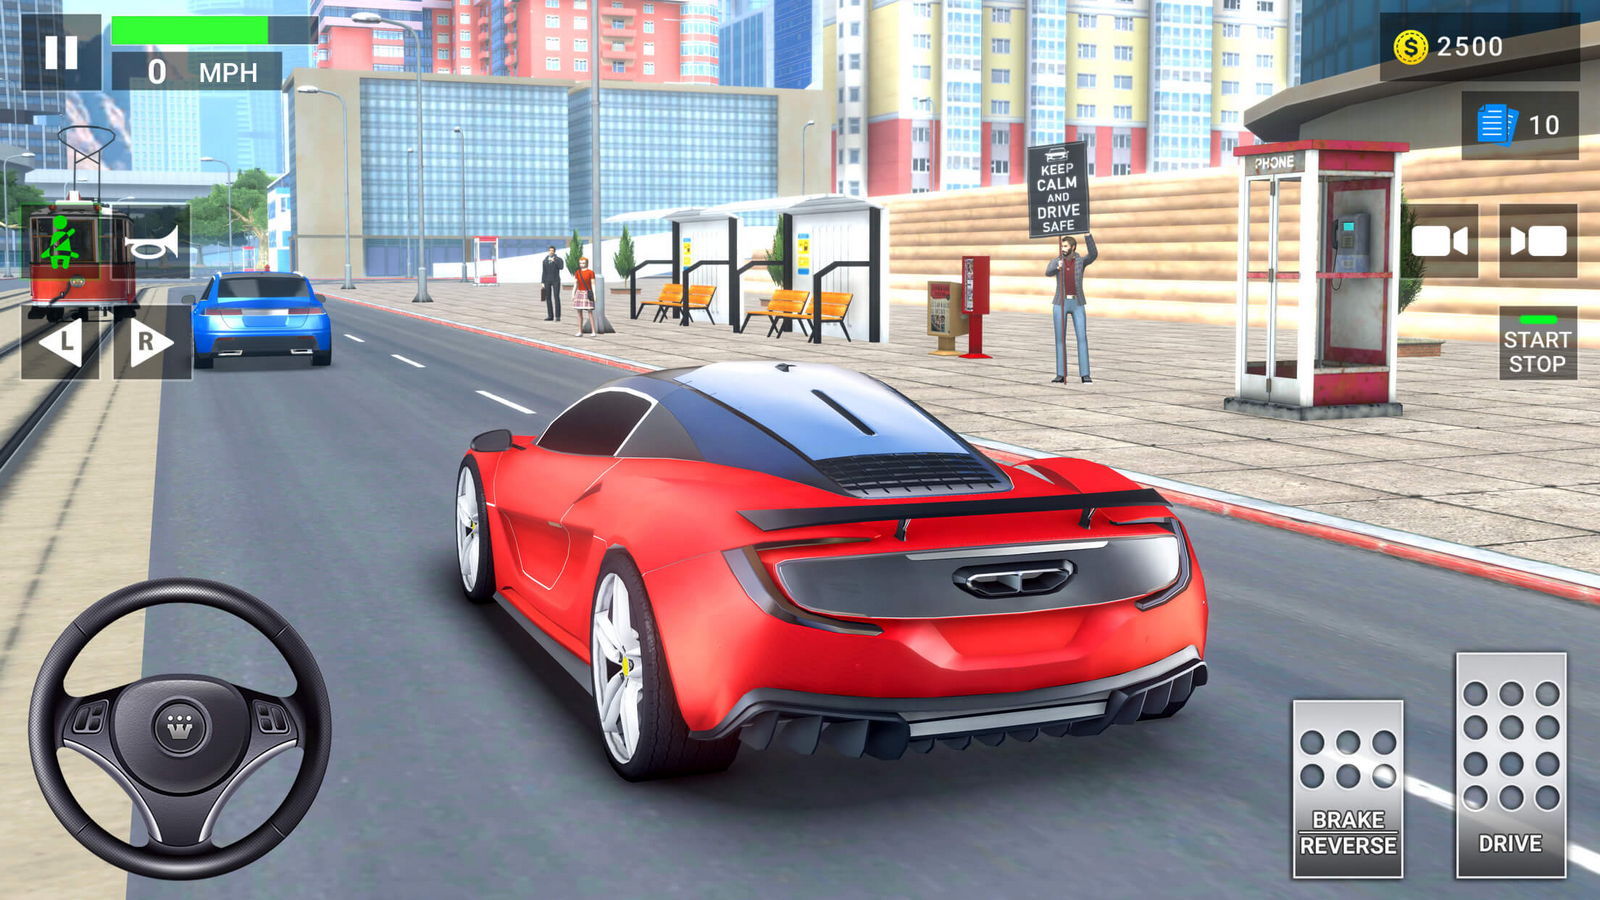 Download do APK de jogos de carros de escola de para Android